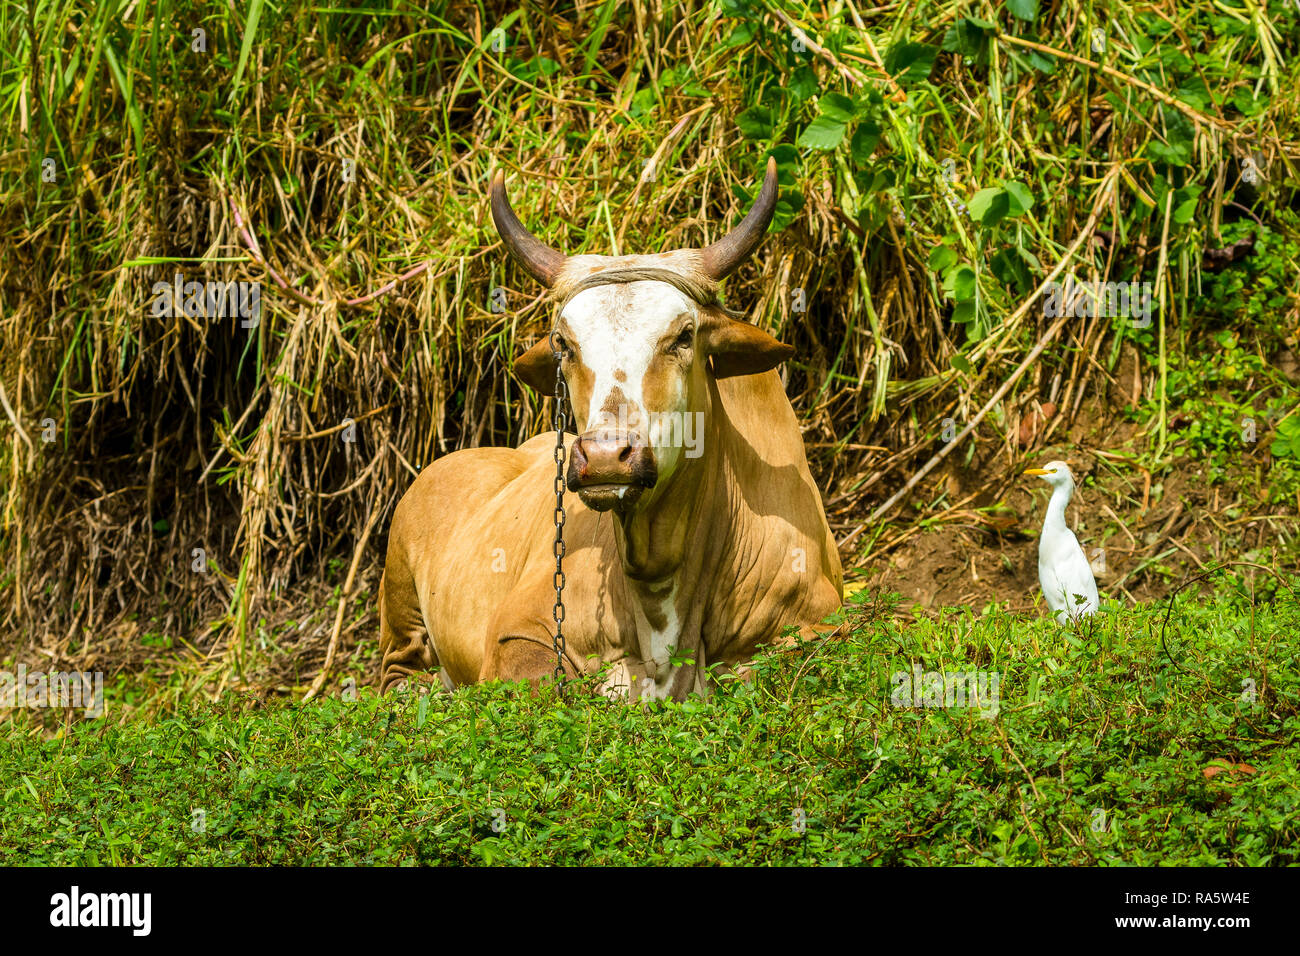 Tobago cultura y bienestar animal. Gran vaca cornuda, encadenado a una estaca y acostada en el bosque lluvioso con una Garceta Blanca ave a la derecha. Foto de stock